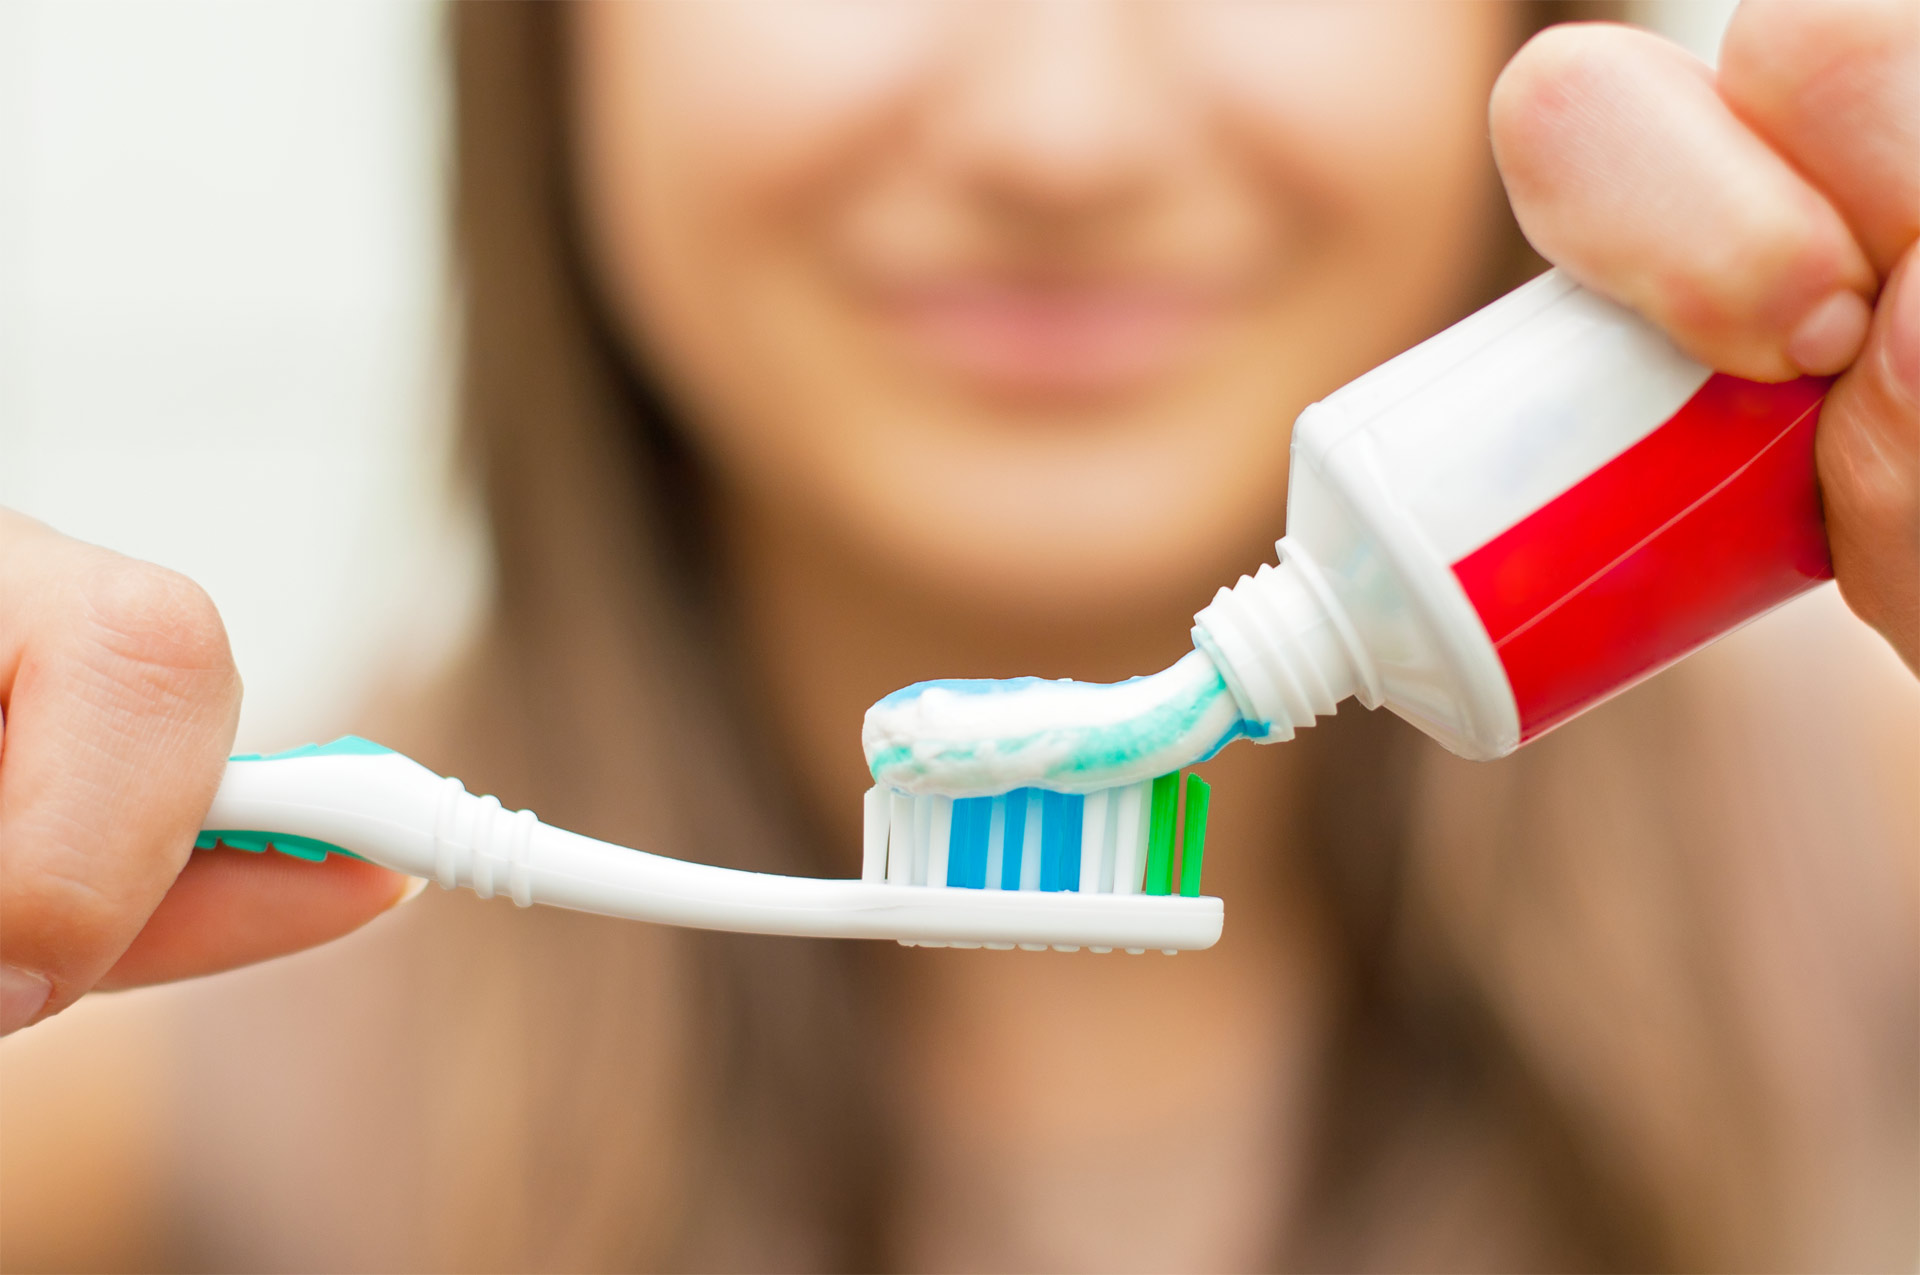 ¿Limpias tus dientes al menos dos veces al día, dos minutos cada vez? Esta es la recomendación mínima de la OMS